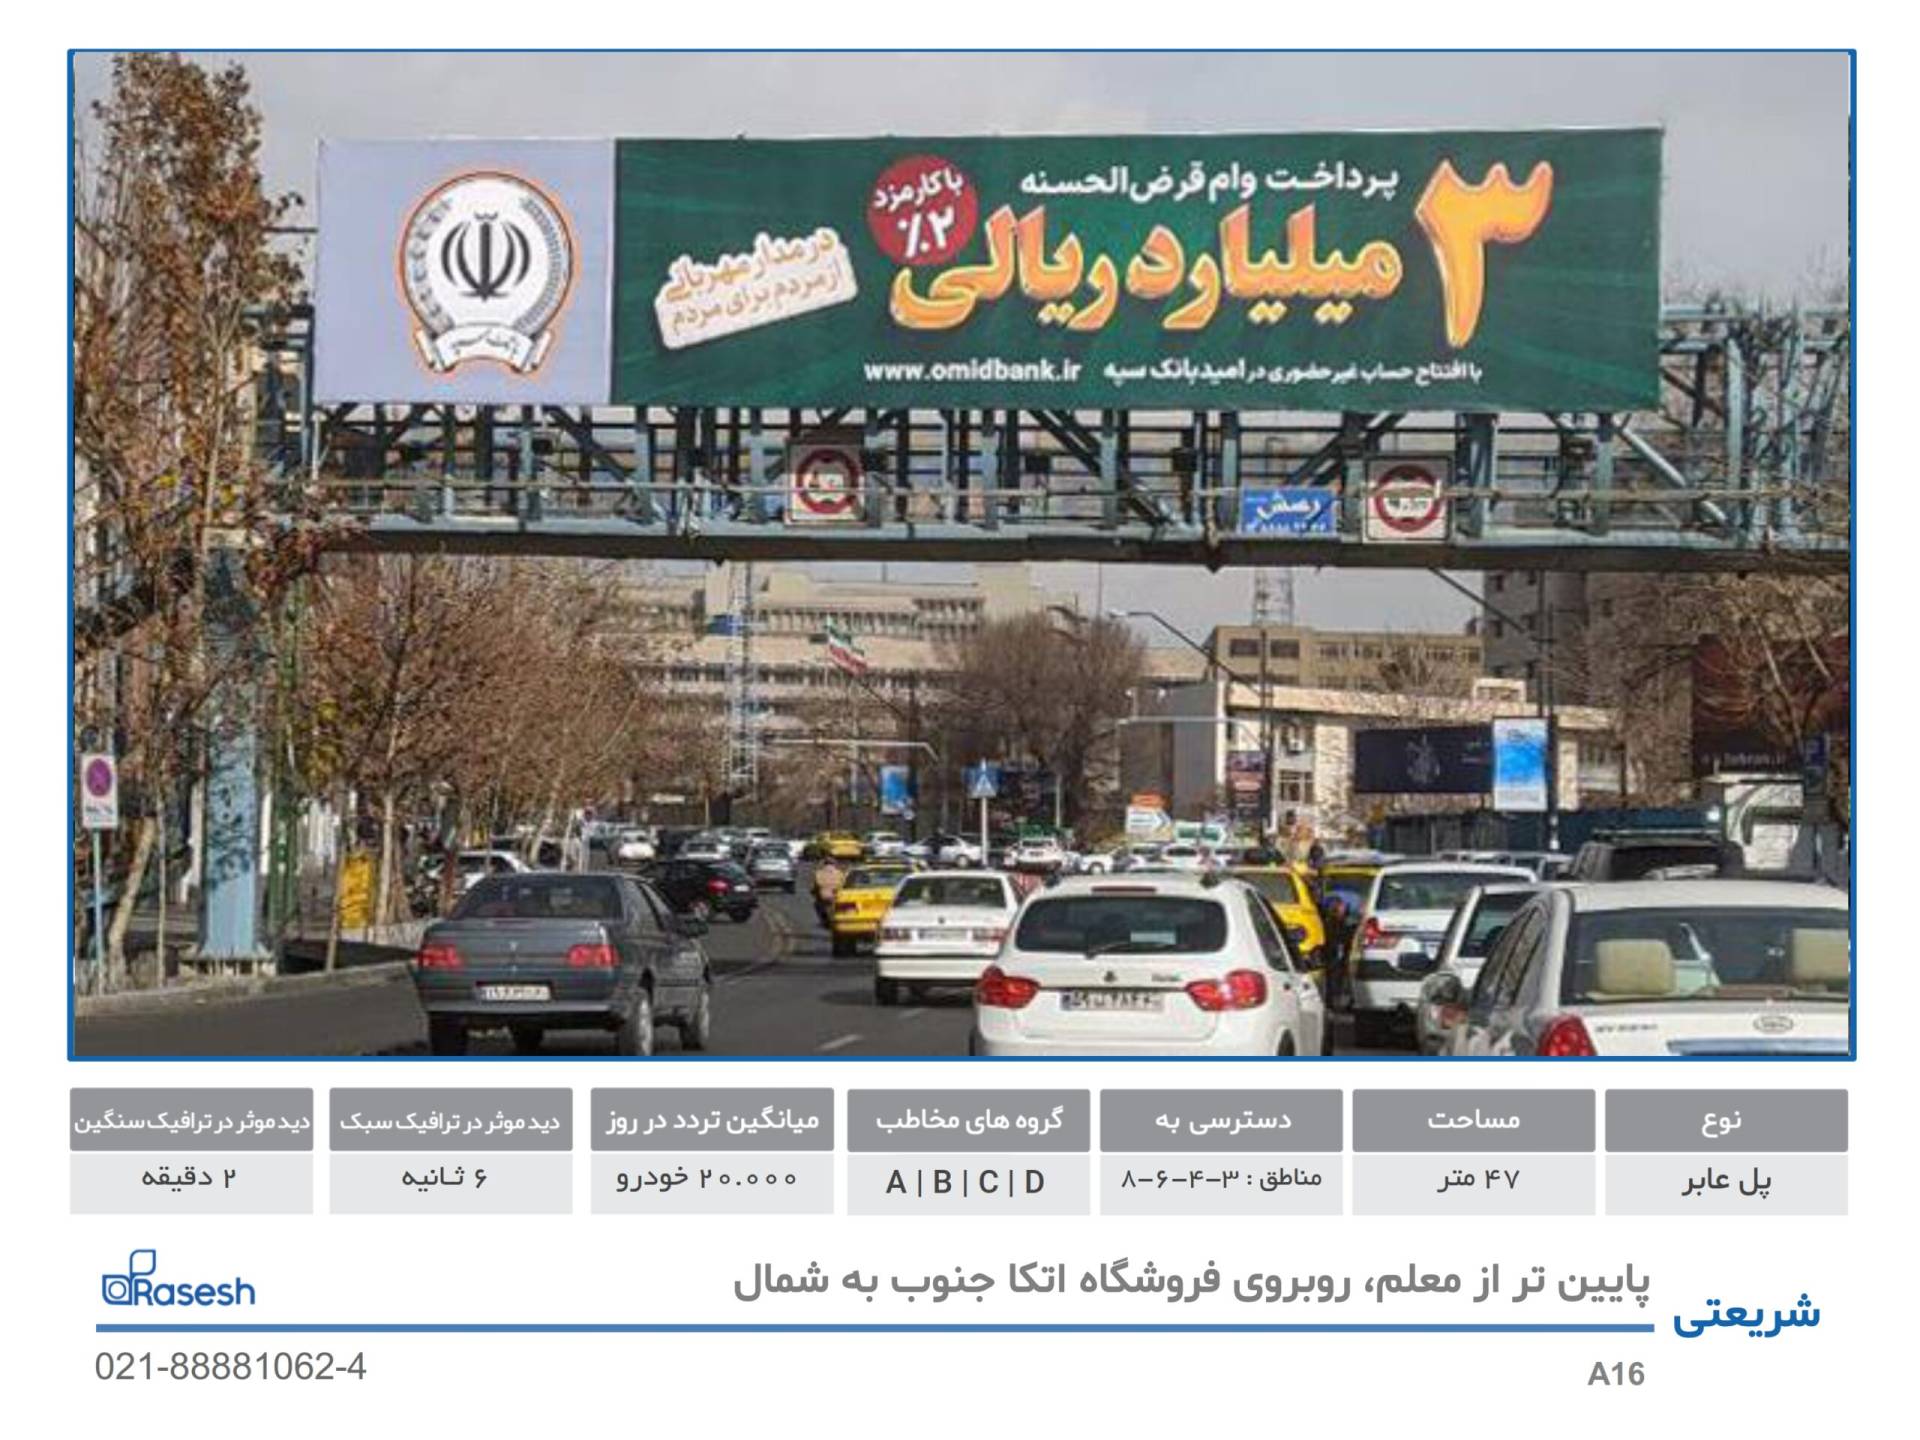 رسش- خیابان شریعتی، تقاطع بهار شیراز، شمال به جنوب